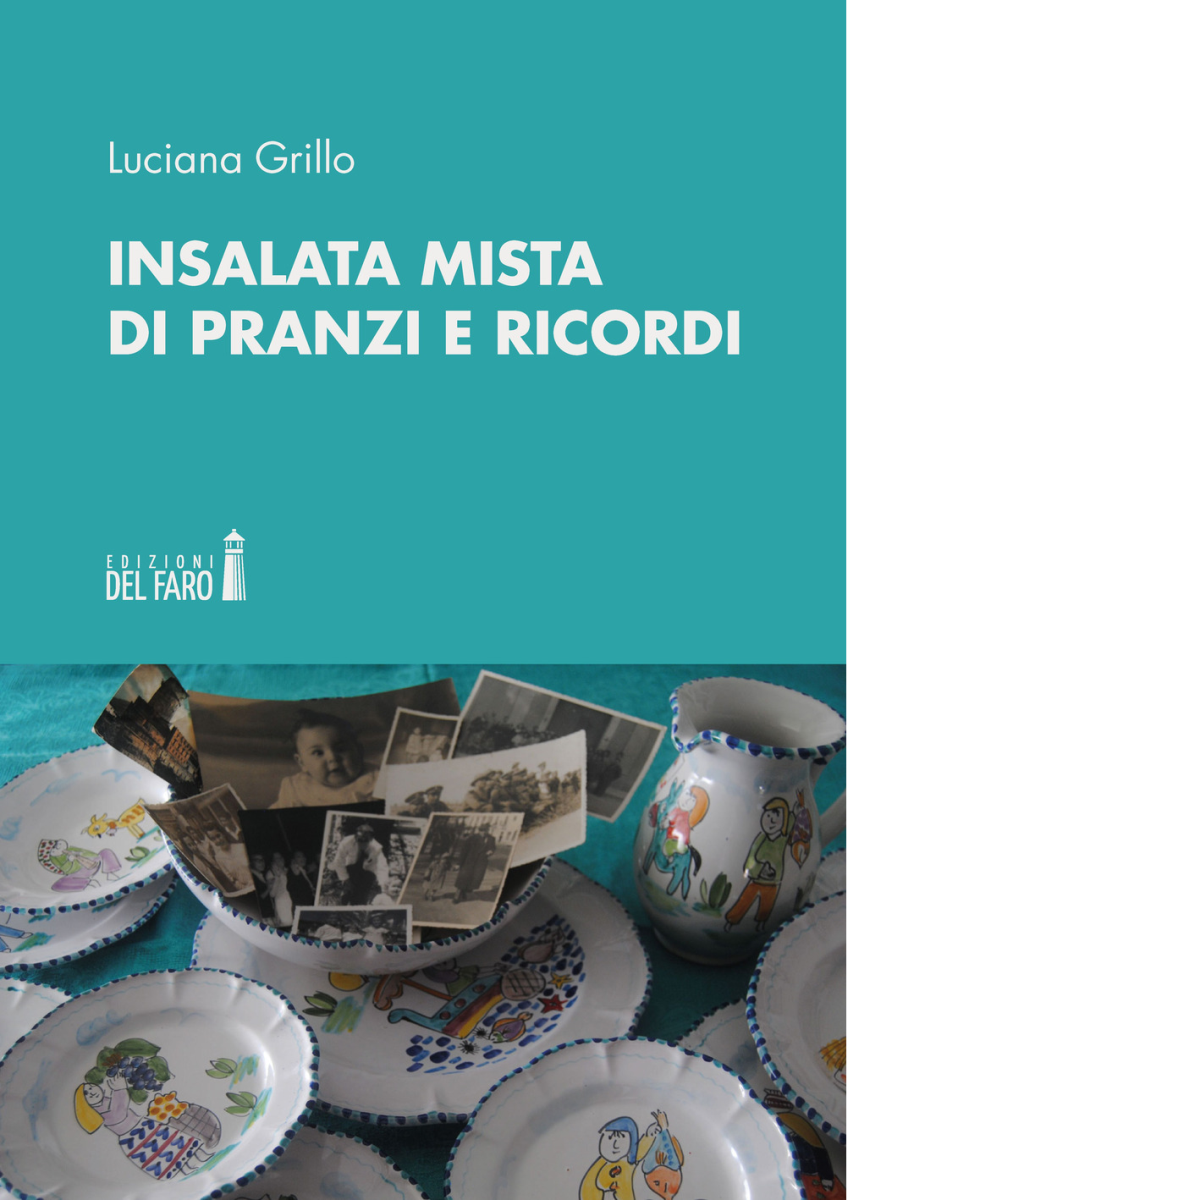 Insalata mista di pranzi e ricordi di Grillo Luciana - Del faro, 2020 libro usato